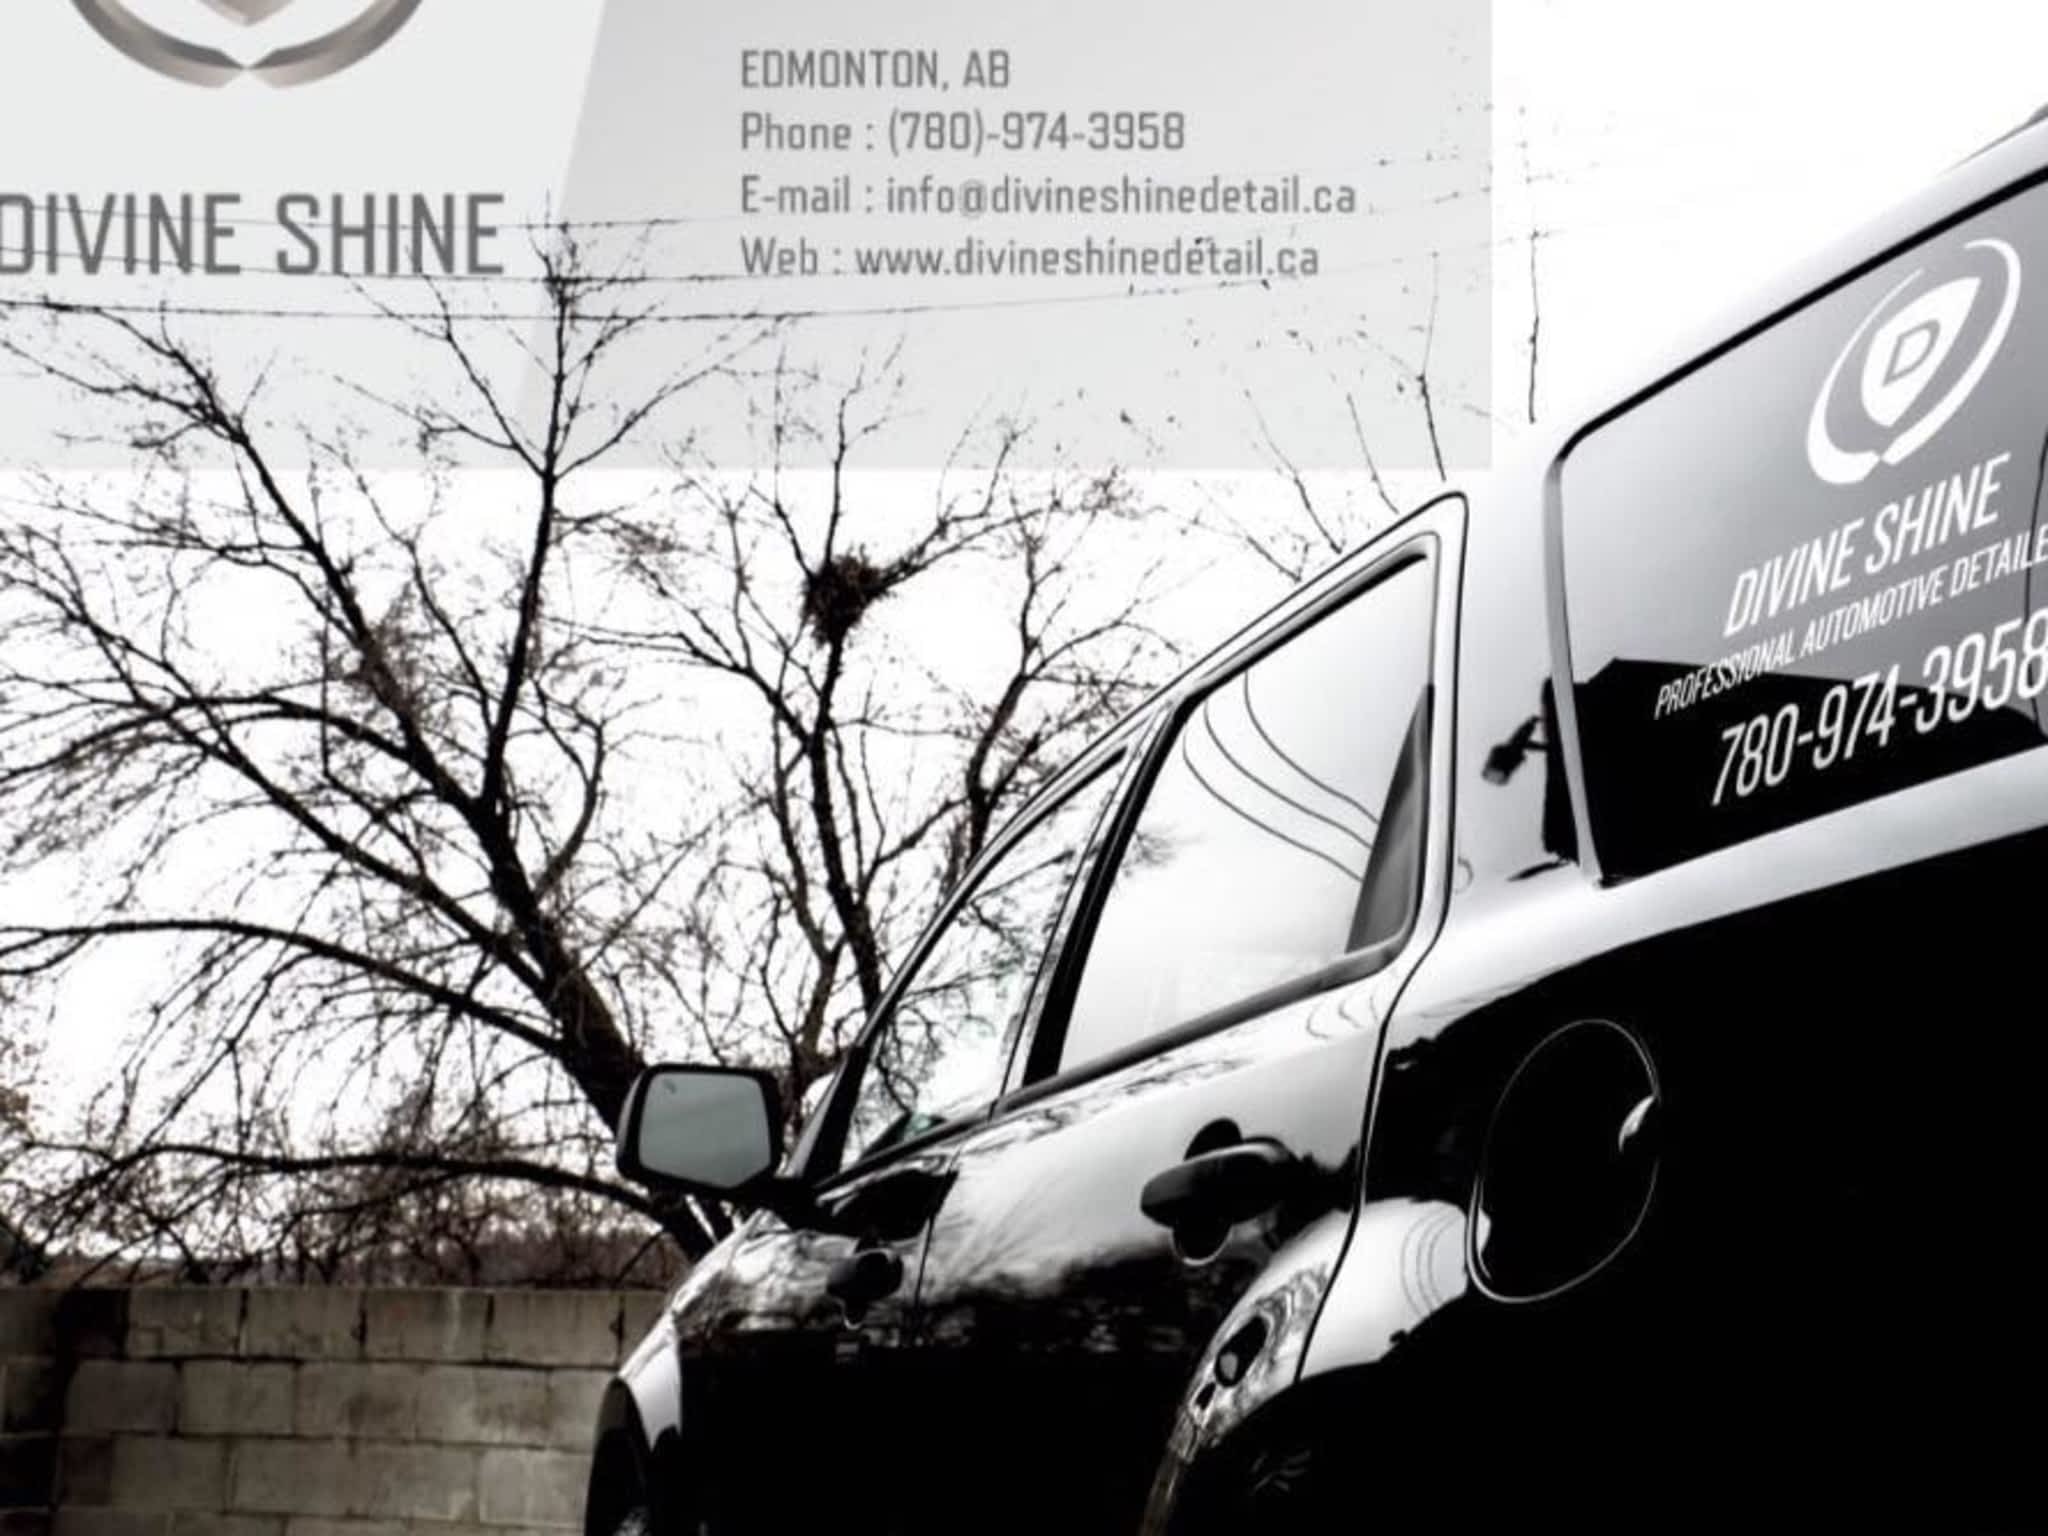 photo Divine Shine Automotive Detailing